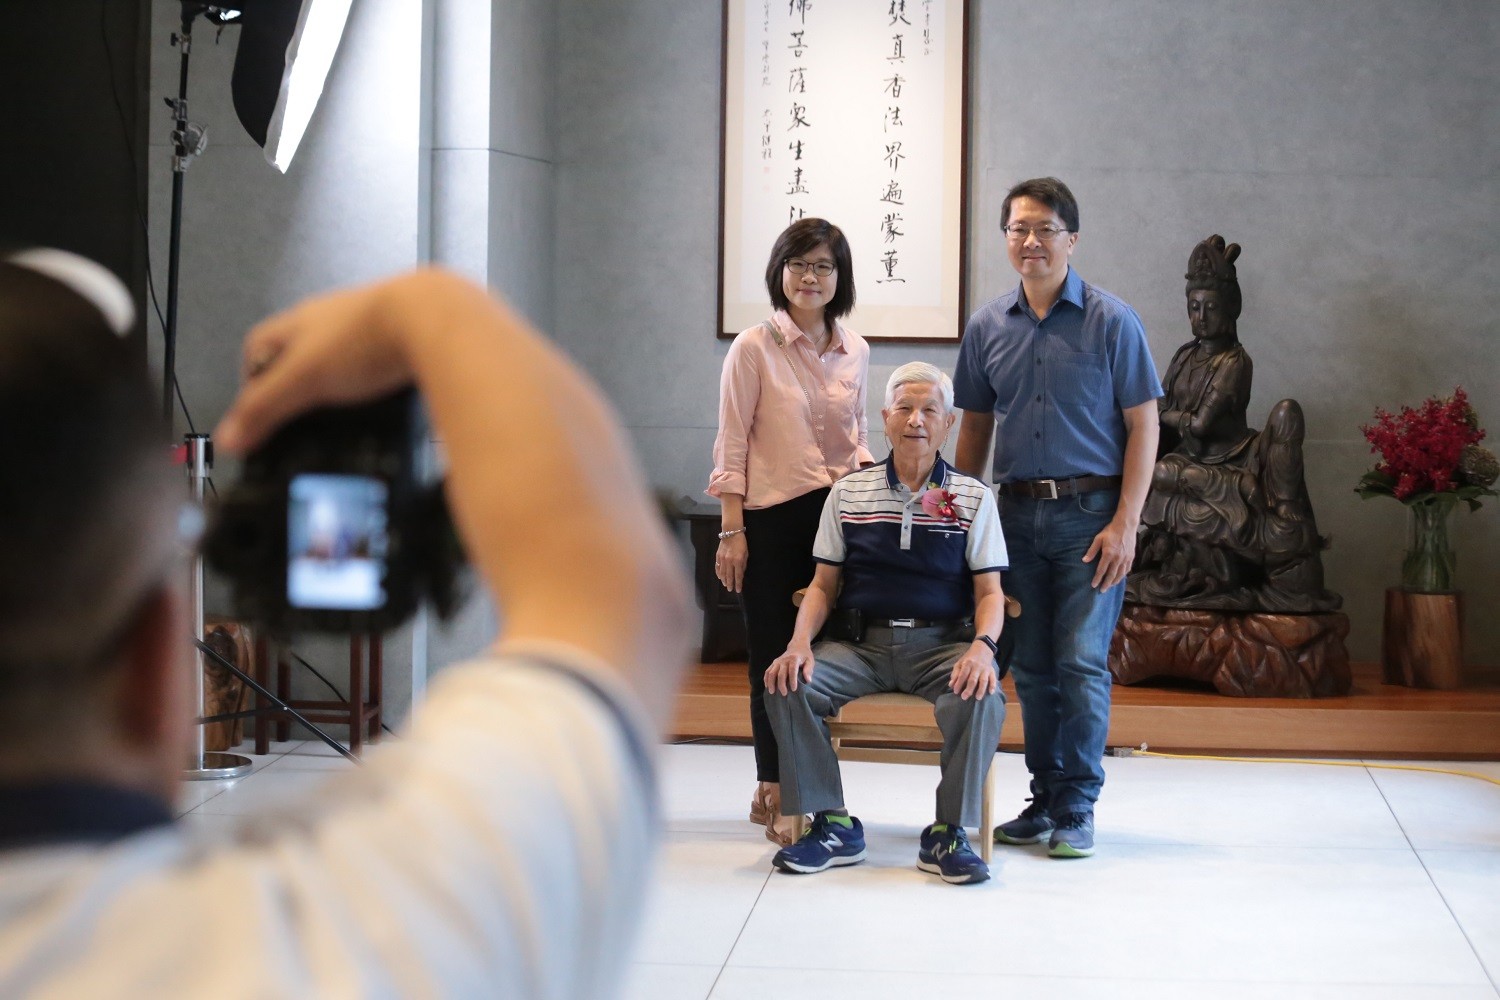 臺中寶雲寺由專業攝影師為壽星年年留下幸福合影